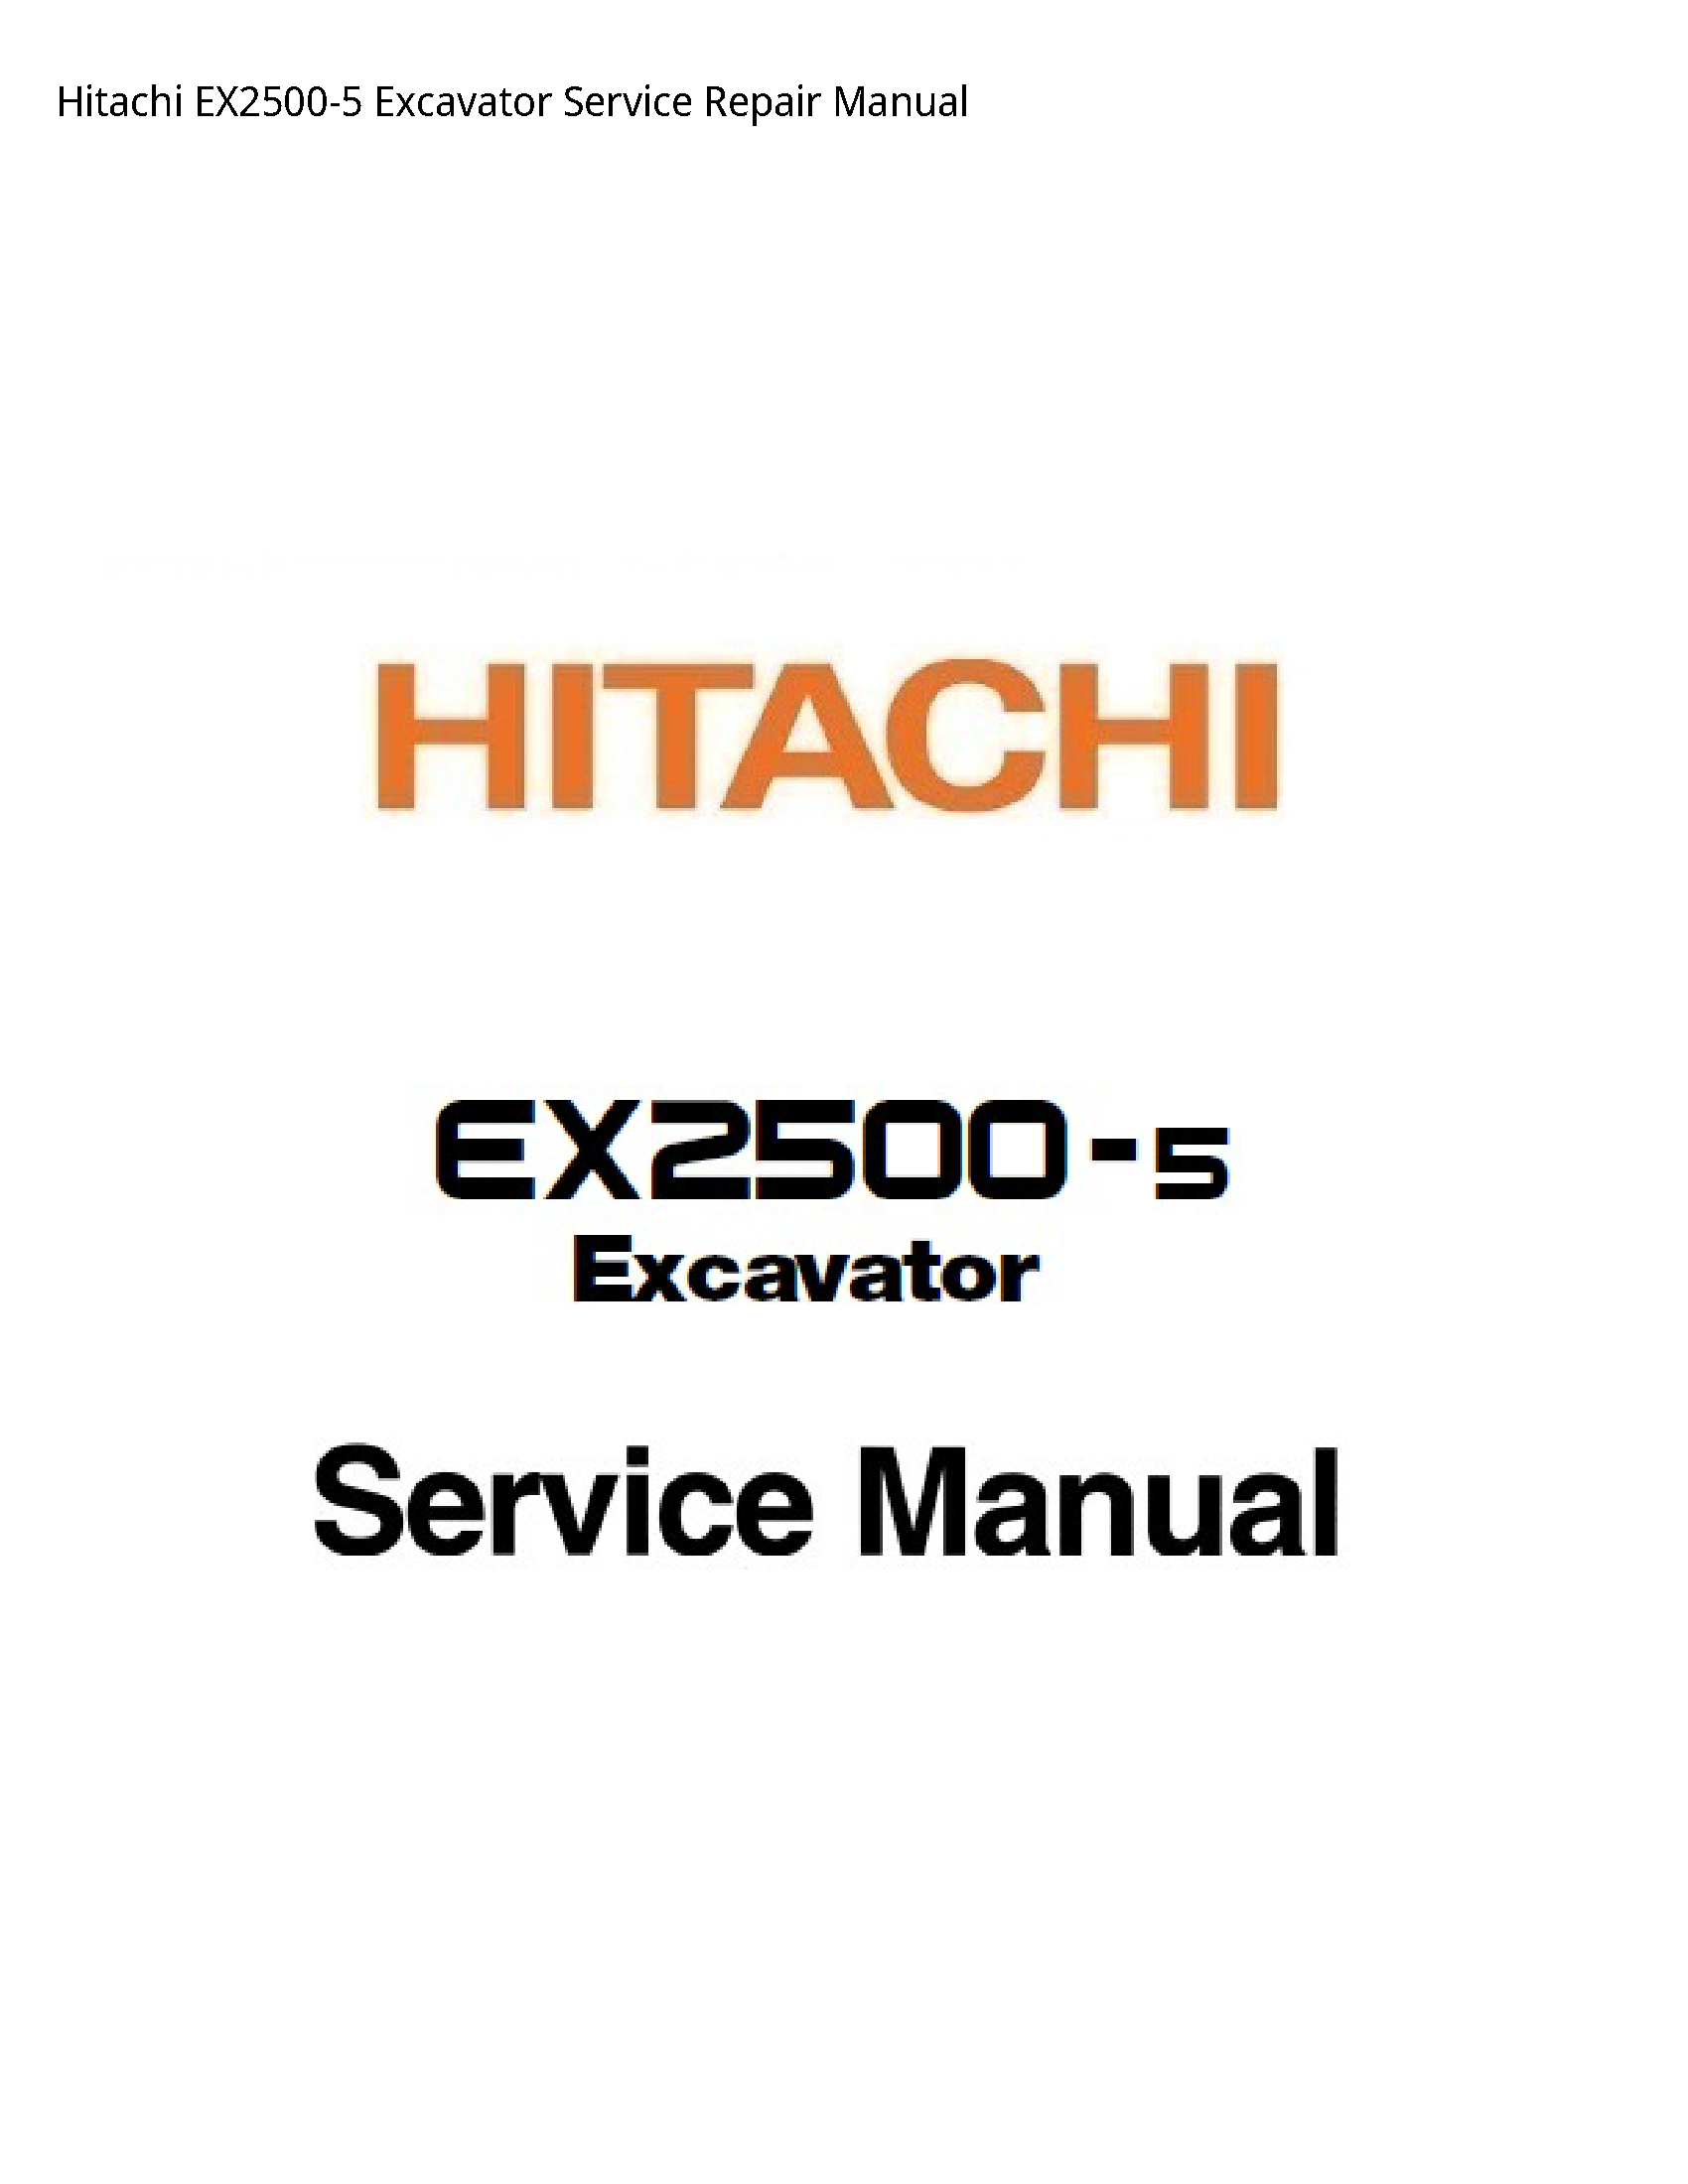 Hitachi EX2500-5 Excavator manual